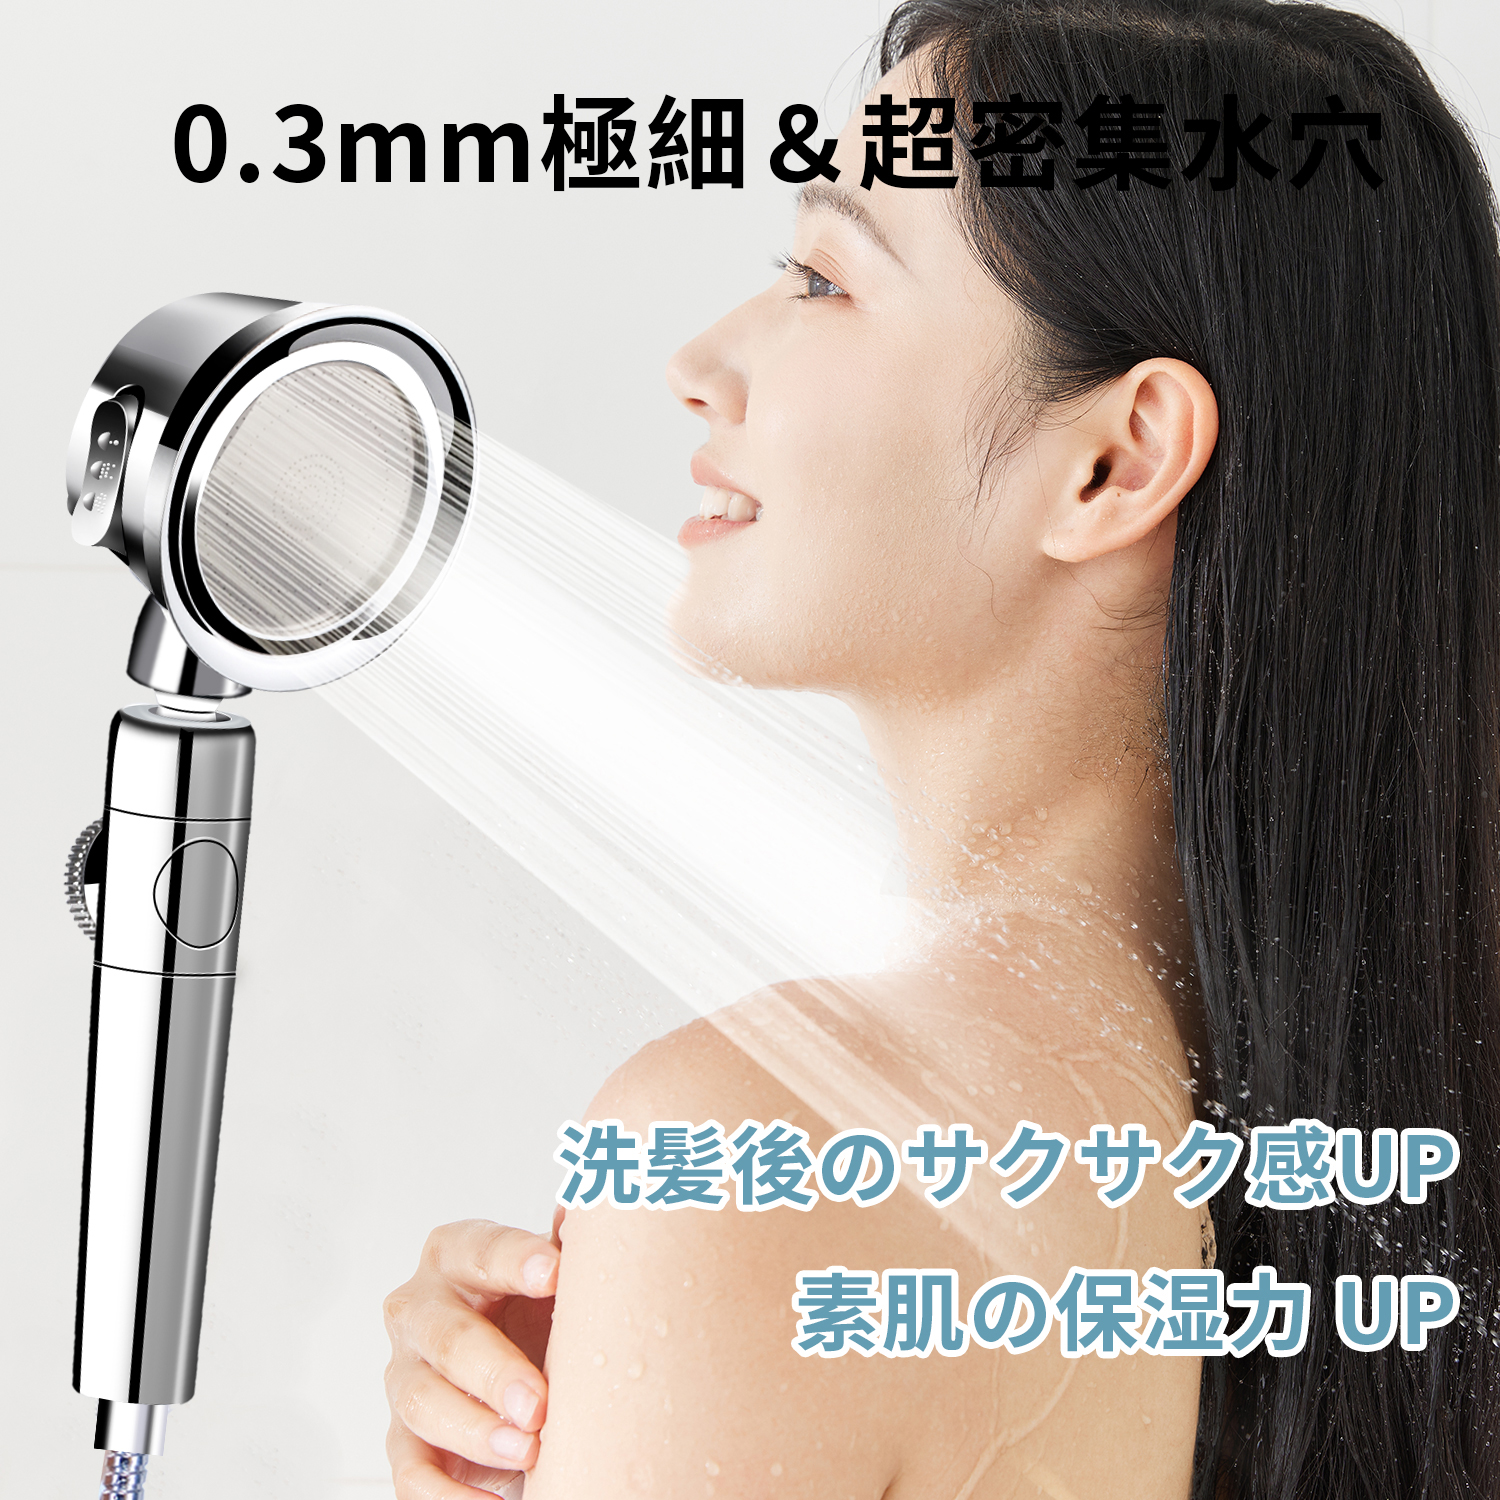 シャワーヘッド 増圧 節水